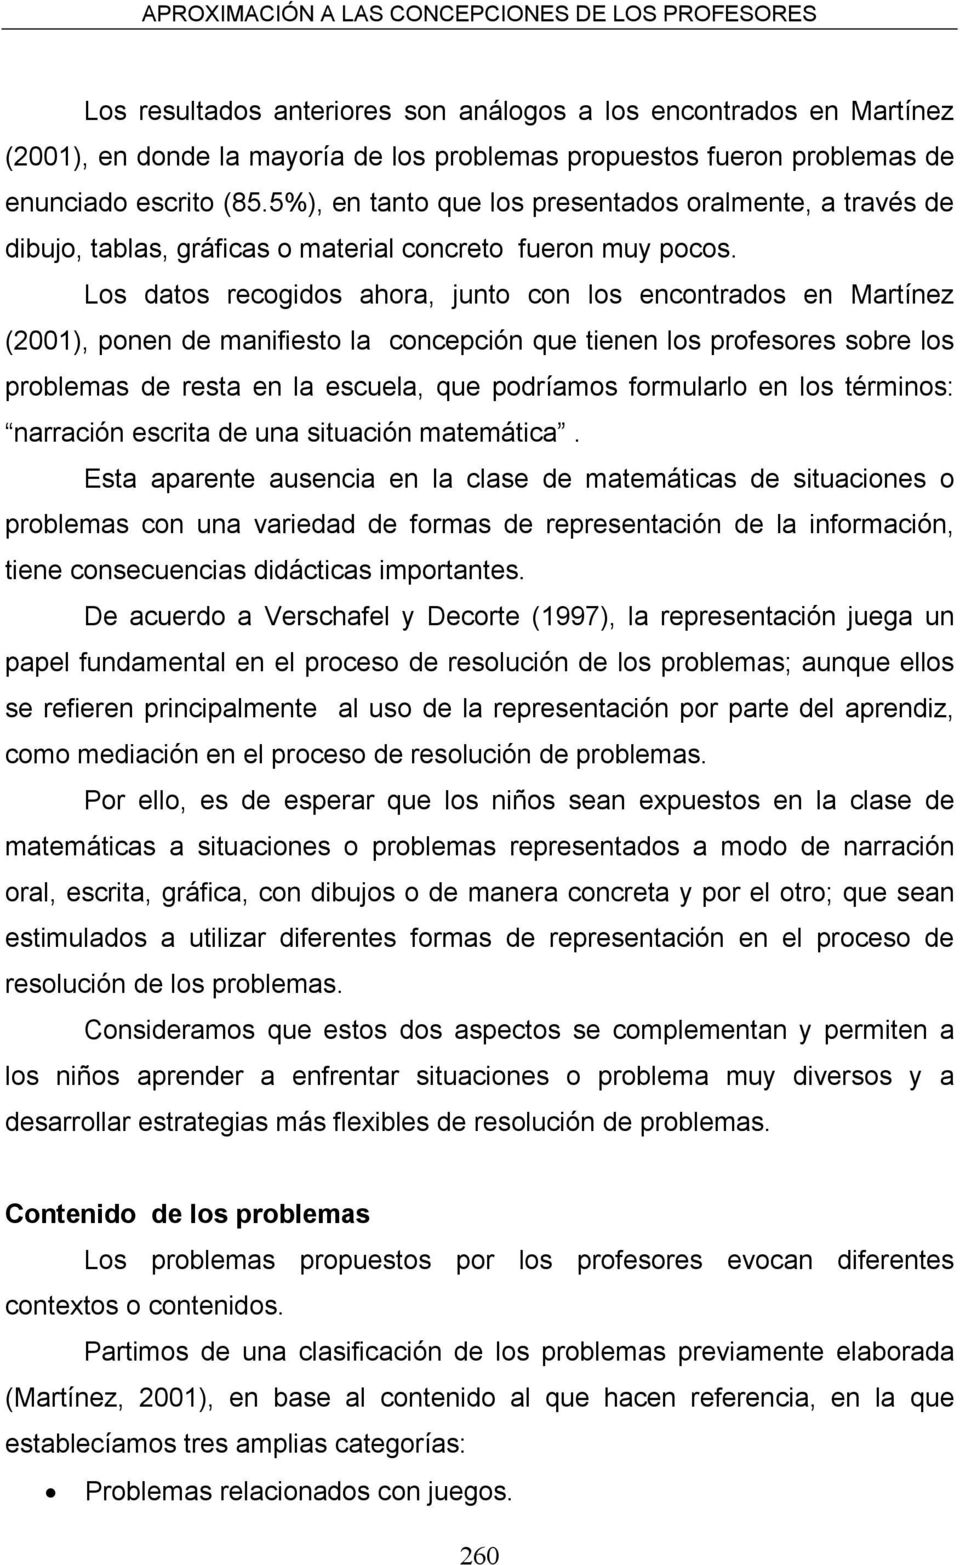 Los datos recogidos ahora, junto con los encontrados en Martínez (2001), ponen de manifiesto la concepción que tienen los profesores sobre los problemas de resta en la escuela, que podríamos